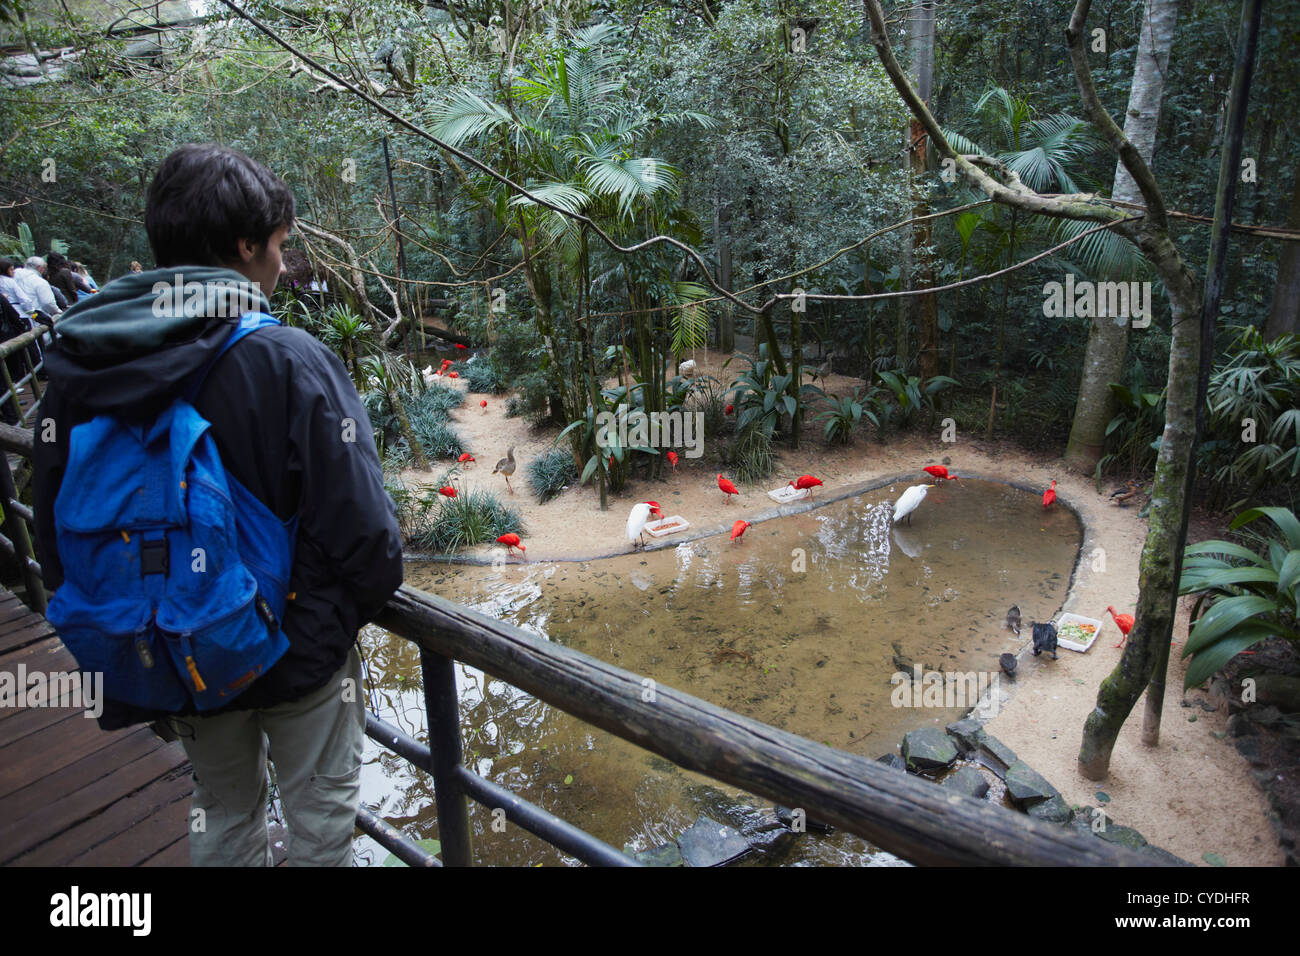 Les gens à l'intérieur de Marche-en enclos au Parque das Aves (Parc des Oiseaux), Iguacu, Parana, Brésil Banque D'Images